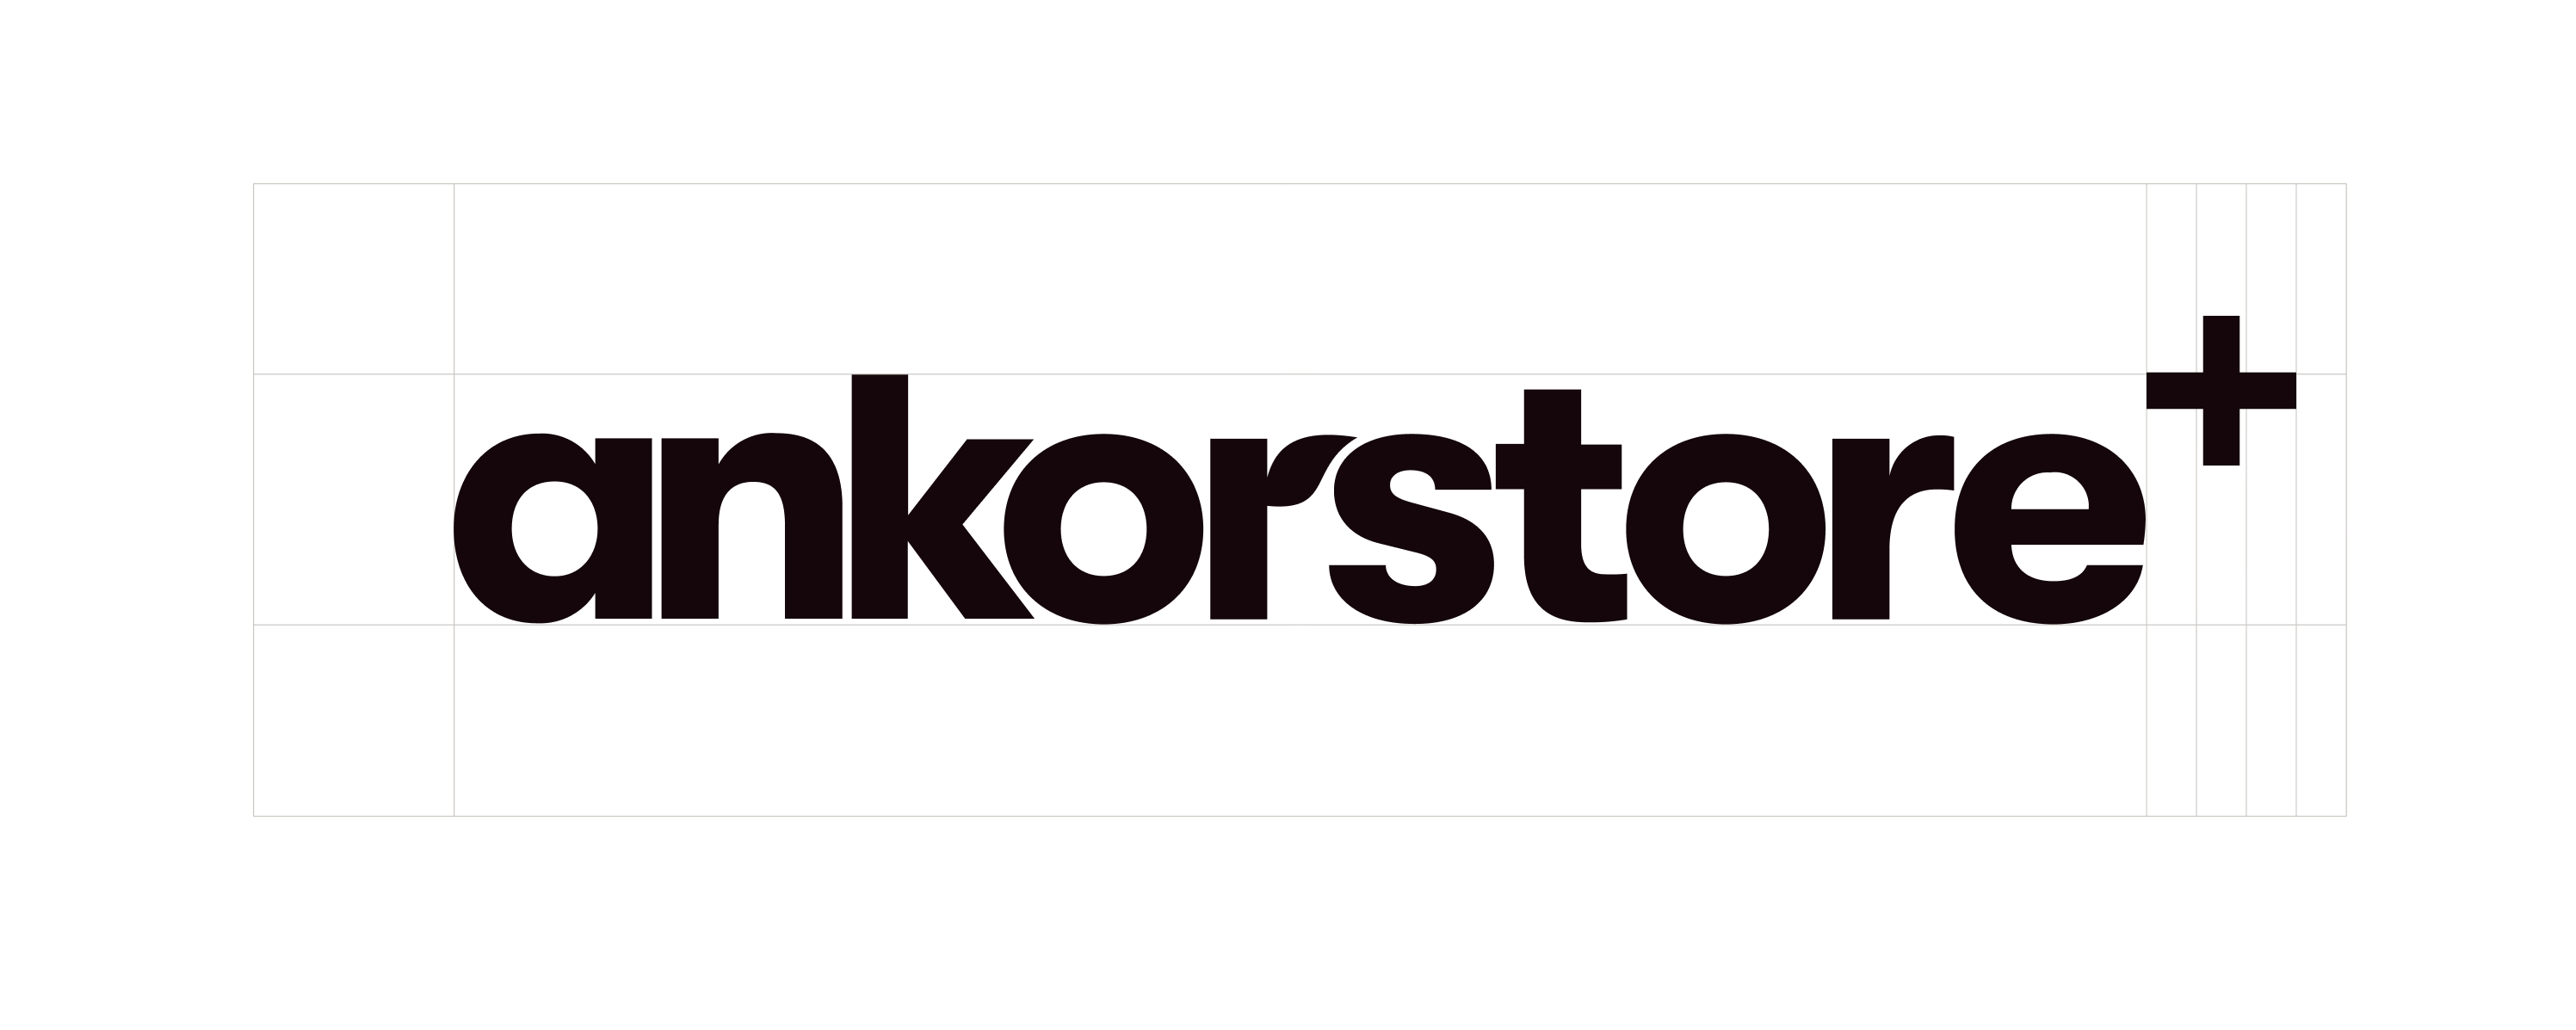 Ankorstore PLUS branding design